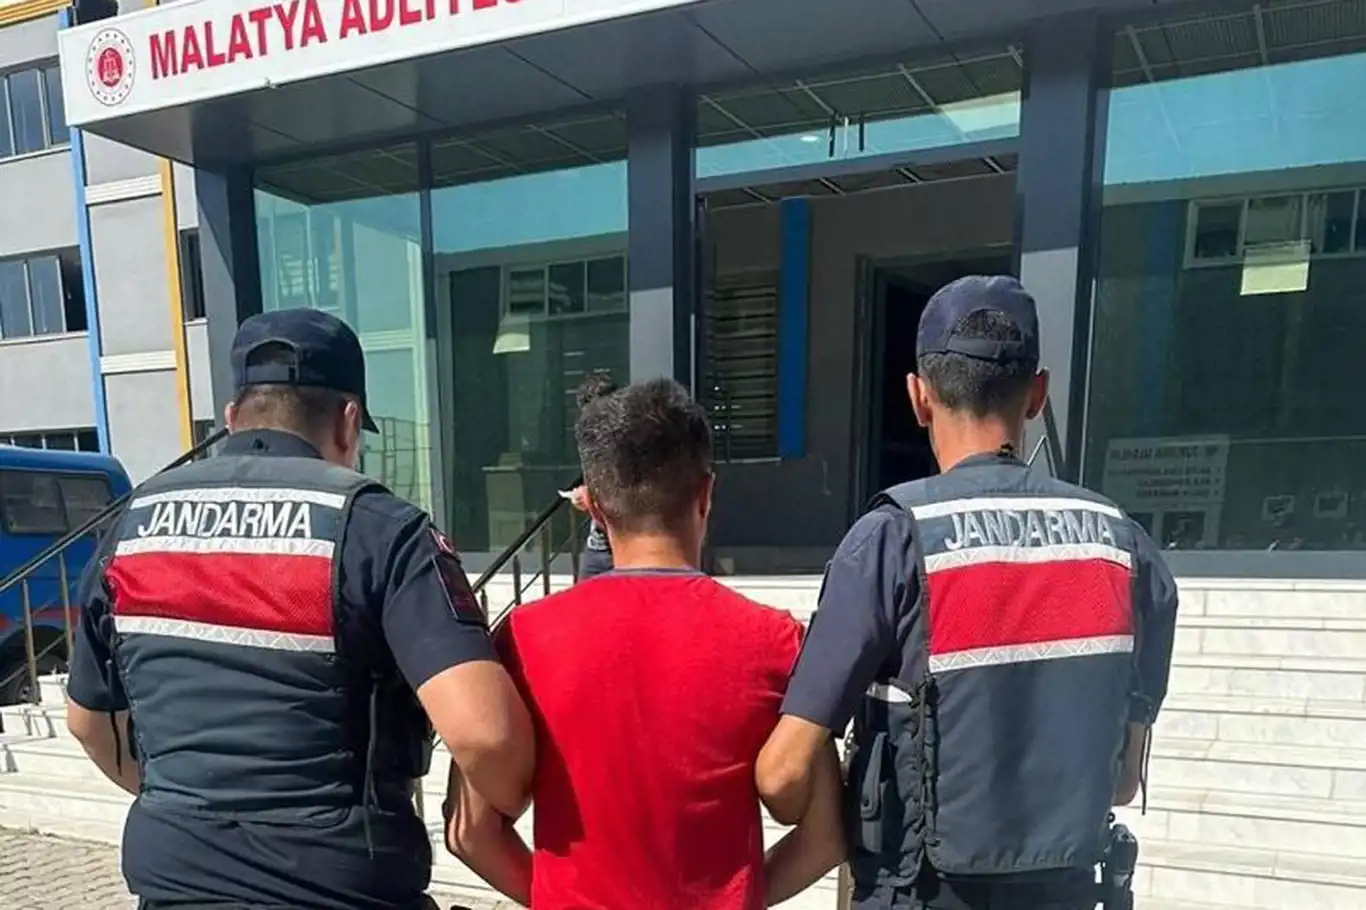 Malatya'da FETÖ'den kesinleşmiş hapis cezası bulunan bir kişi yakalandı